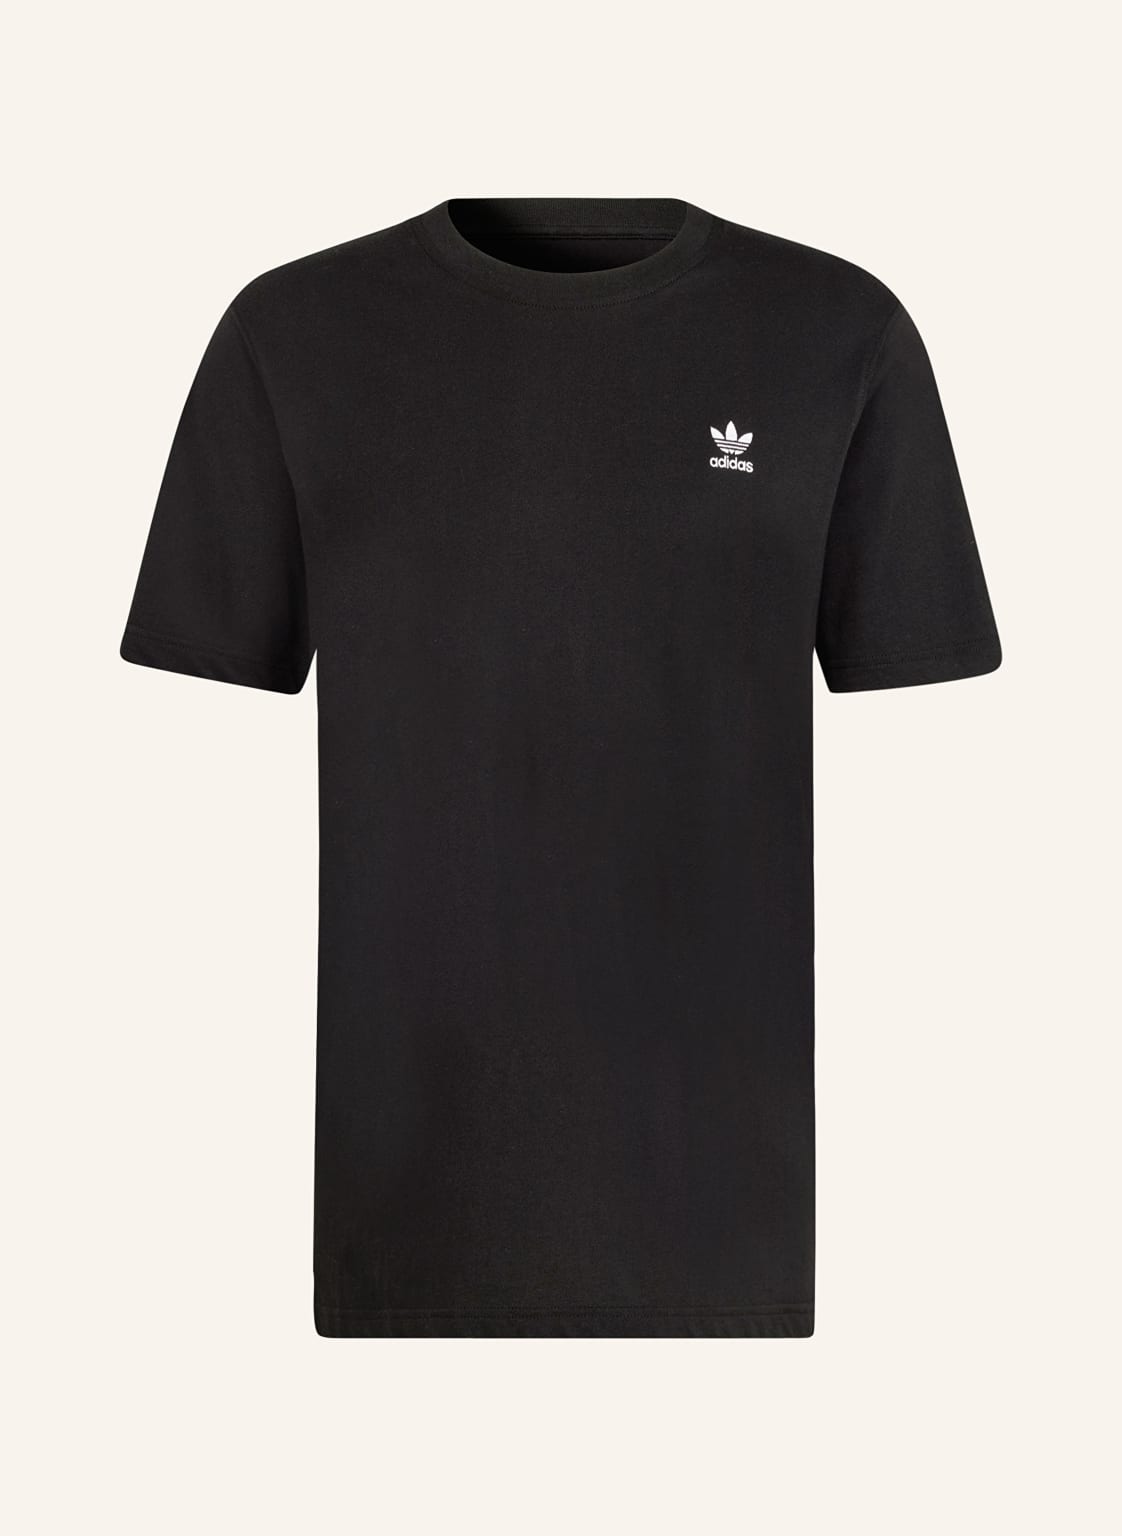 Adidas Originals T-Shirt Essential schwarz von adidas Originals